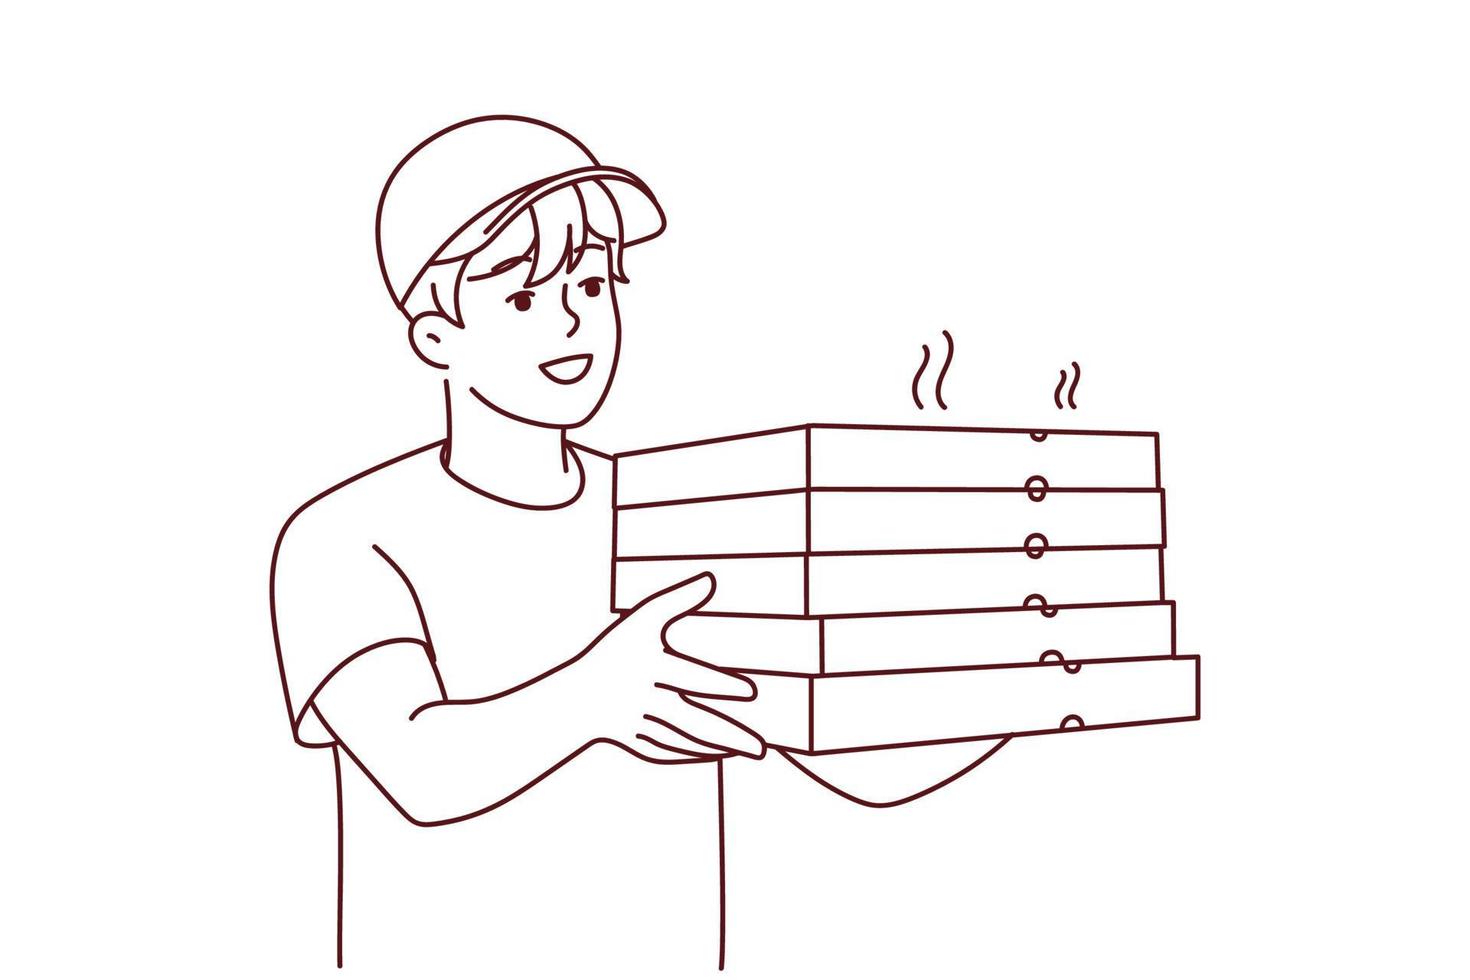 sonriente masculino mensajero en uniforme entregar caliente Pizza a cliente. contento repartidor con Pizza cajas en manos. comida entrega servicio. vector ilustración.